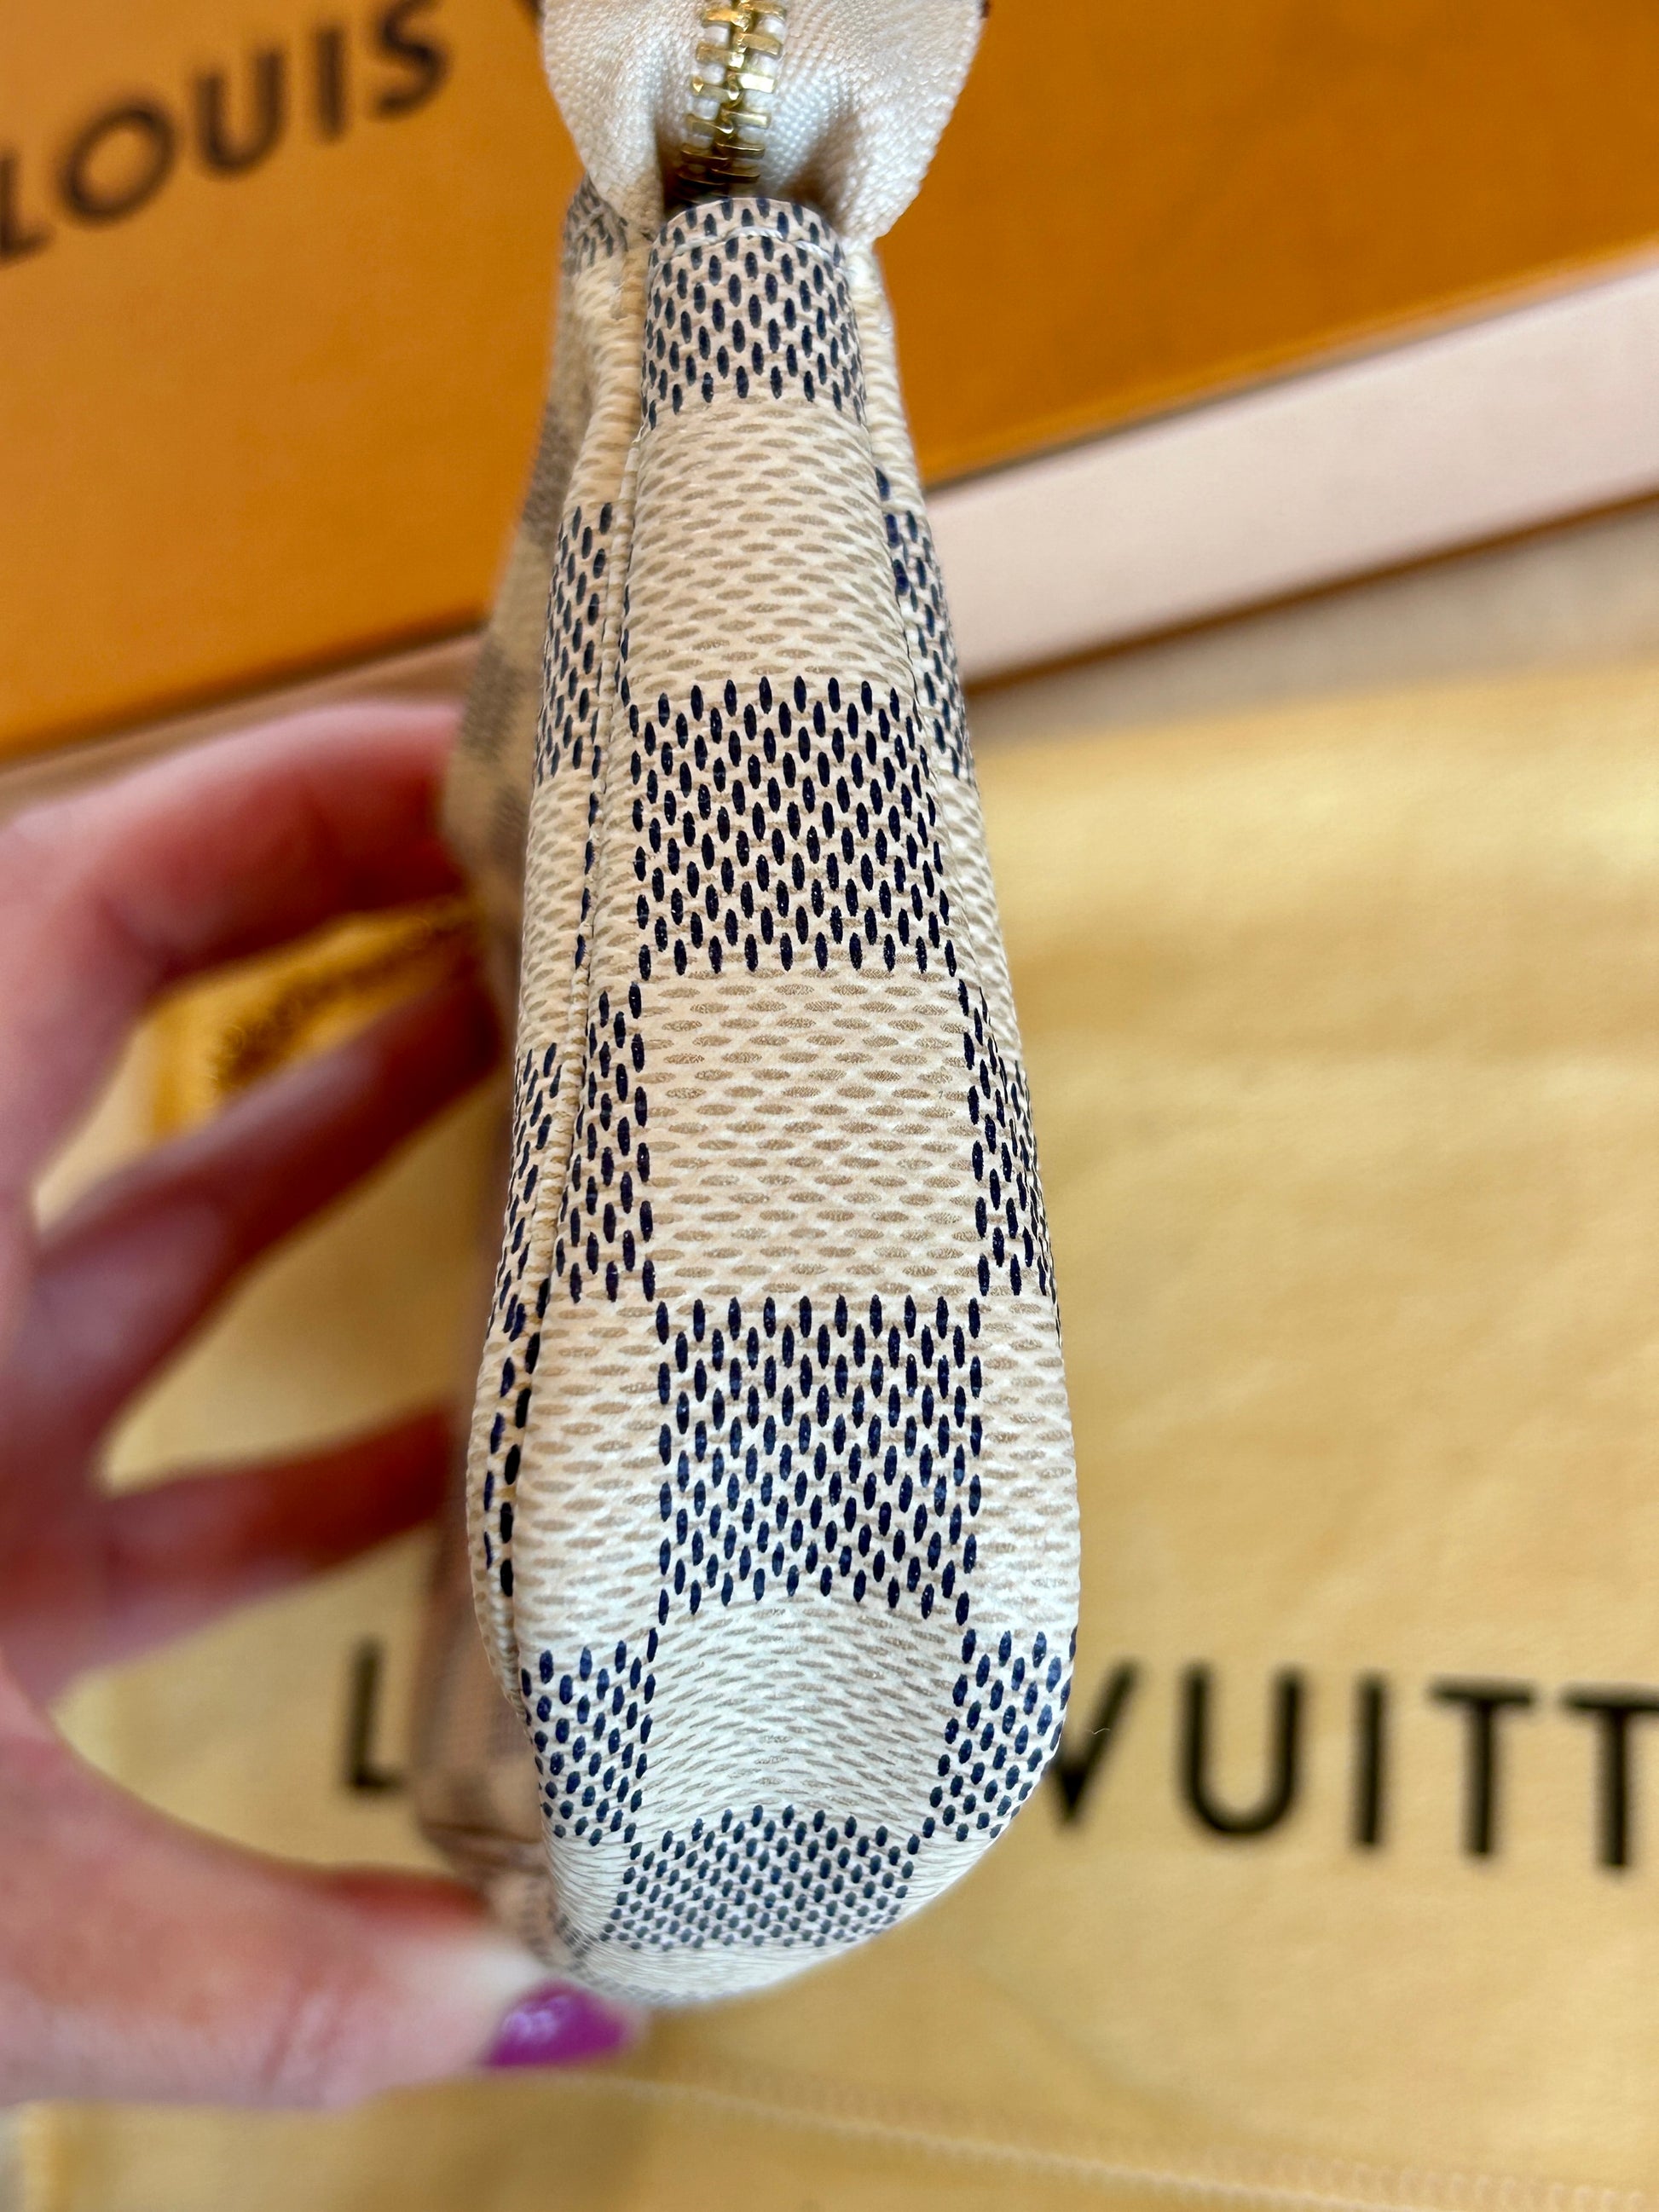 AUTHENTIC Louis Vuitton mini pochette accessoires in damier azur